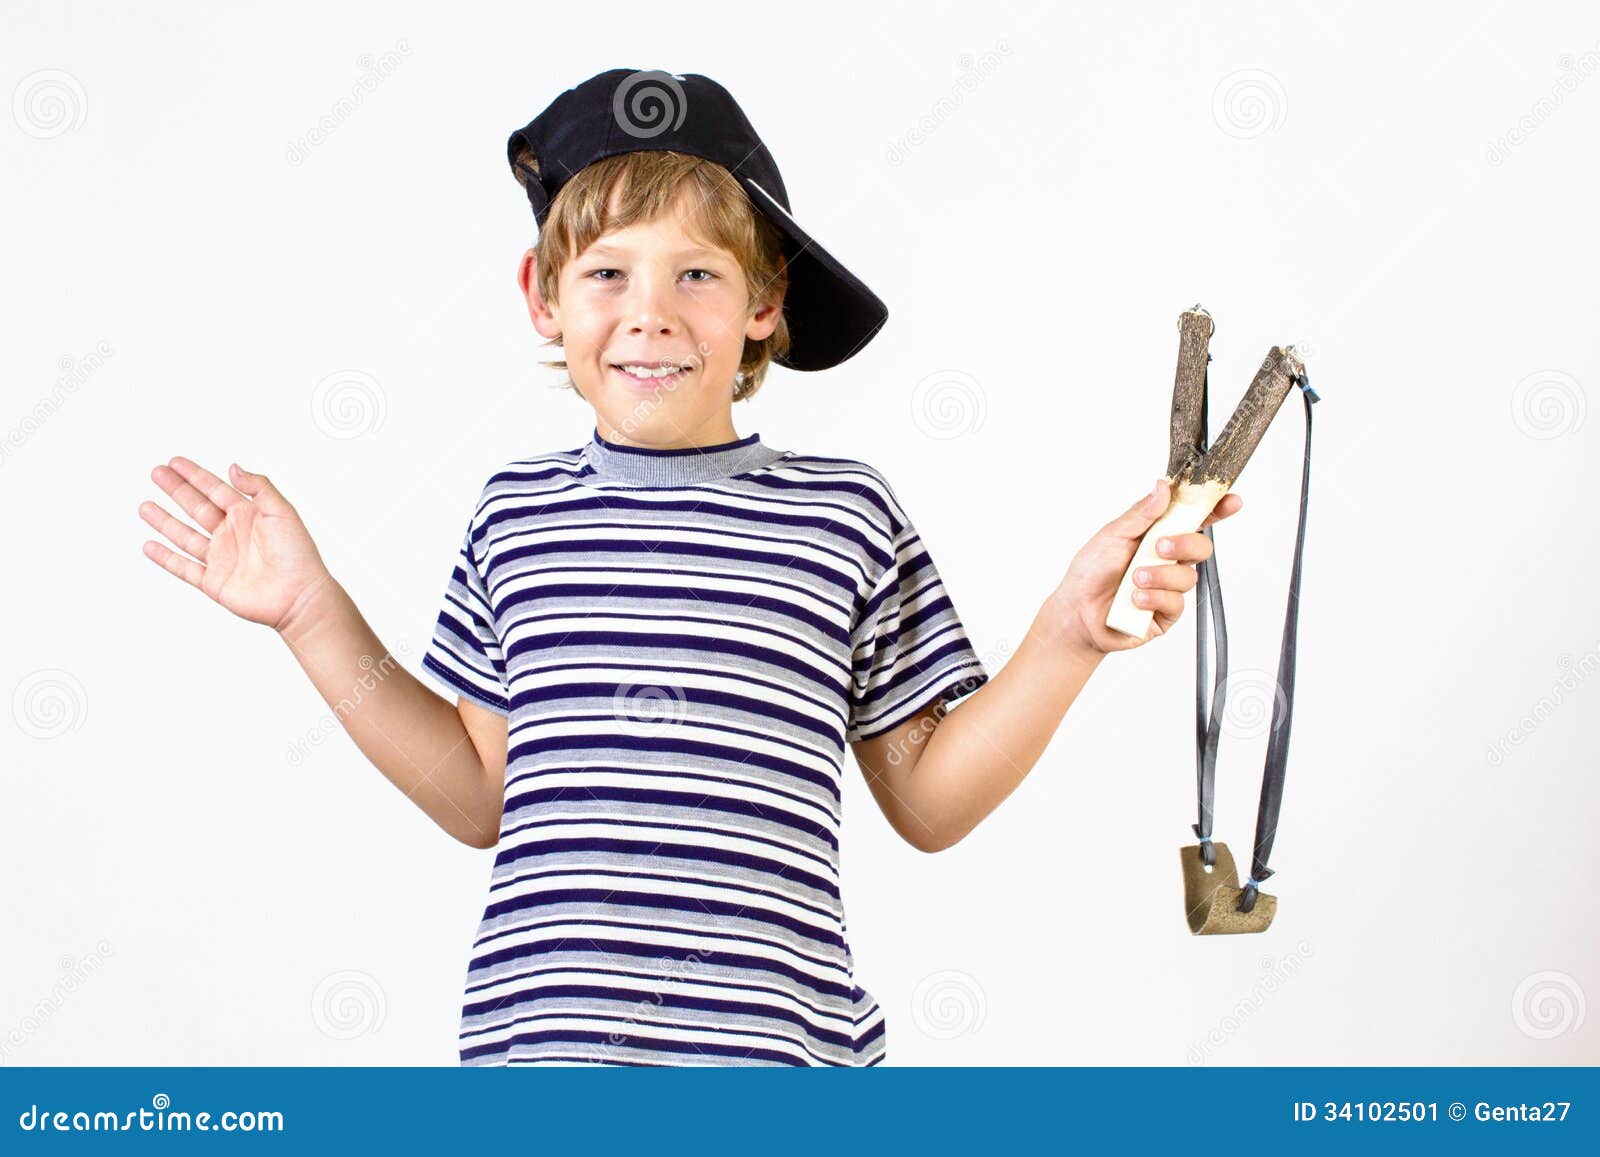 Мальчик разбивает. Мальчик с рогаткой. Рогатка для детей. Мальчик хулиган с рогаткой. Мальчик разбил окно рогаткой.